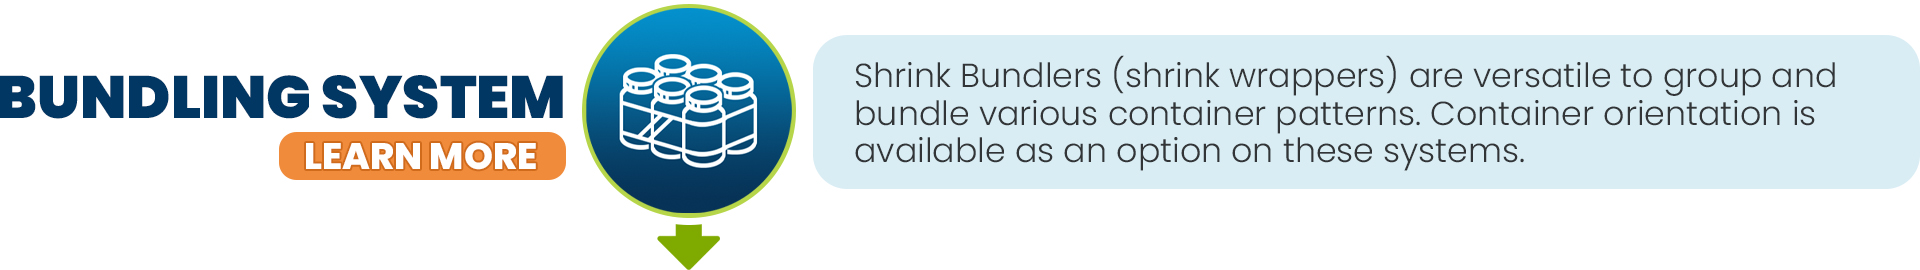 Shrink Bundler - Solid Dose Block copy